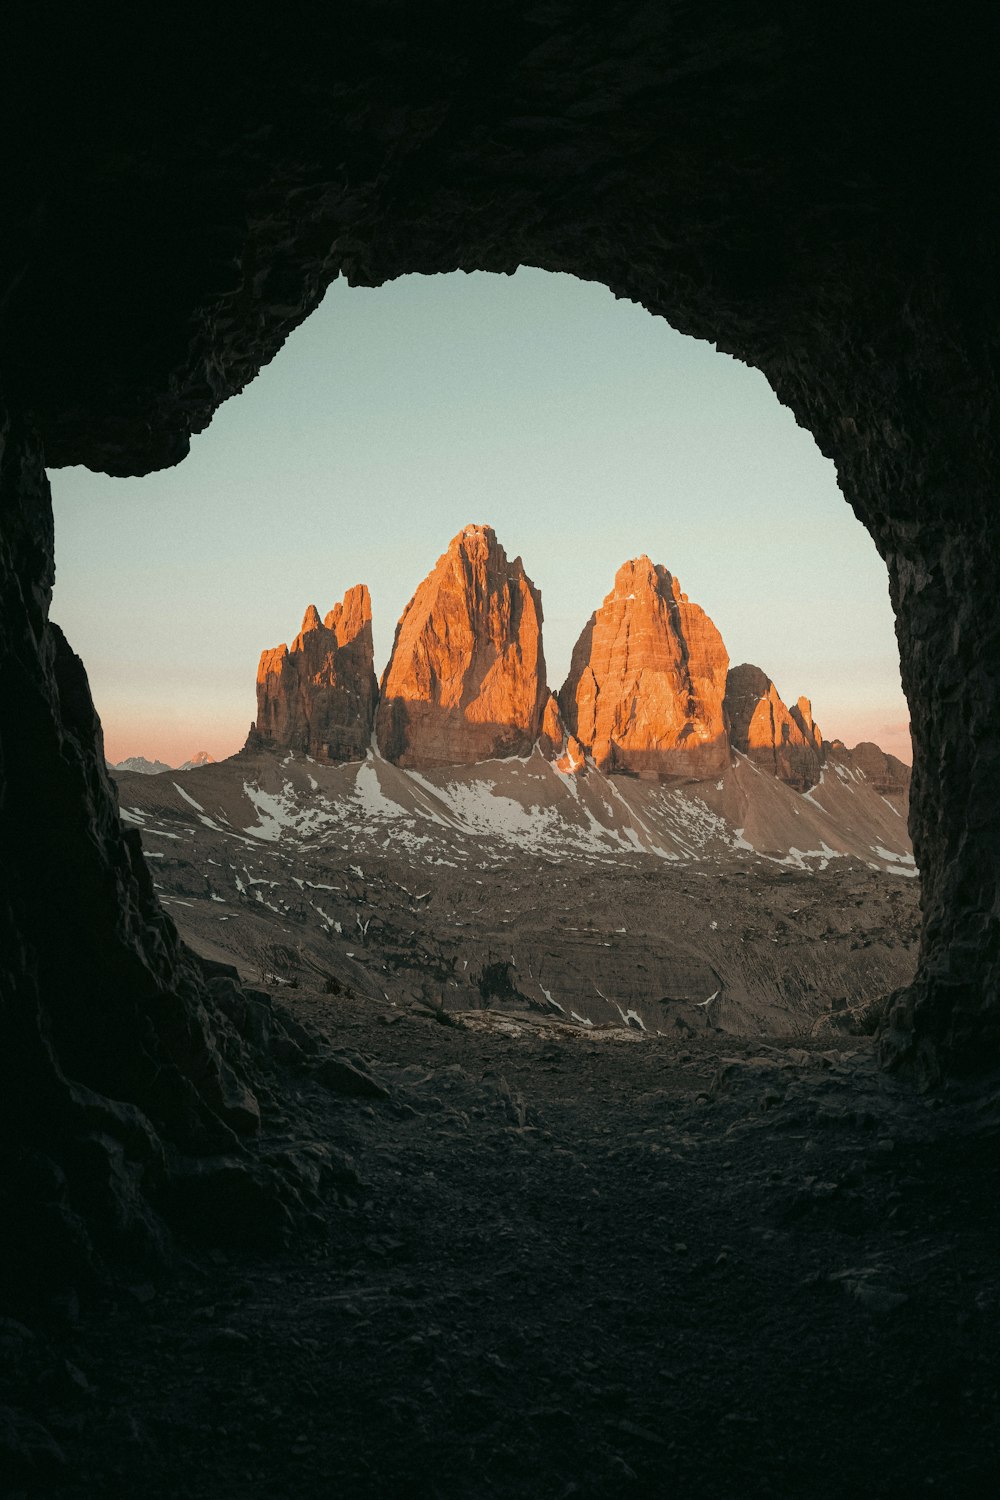 동굴 사이로 보이는 산맥